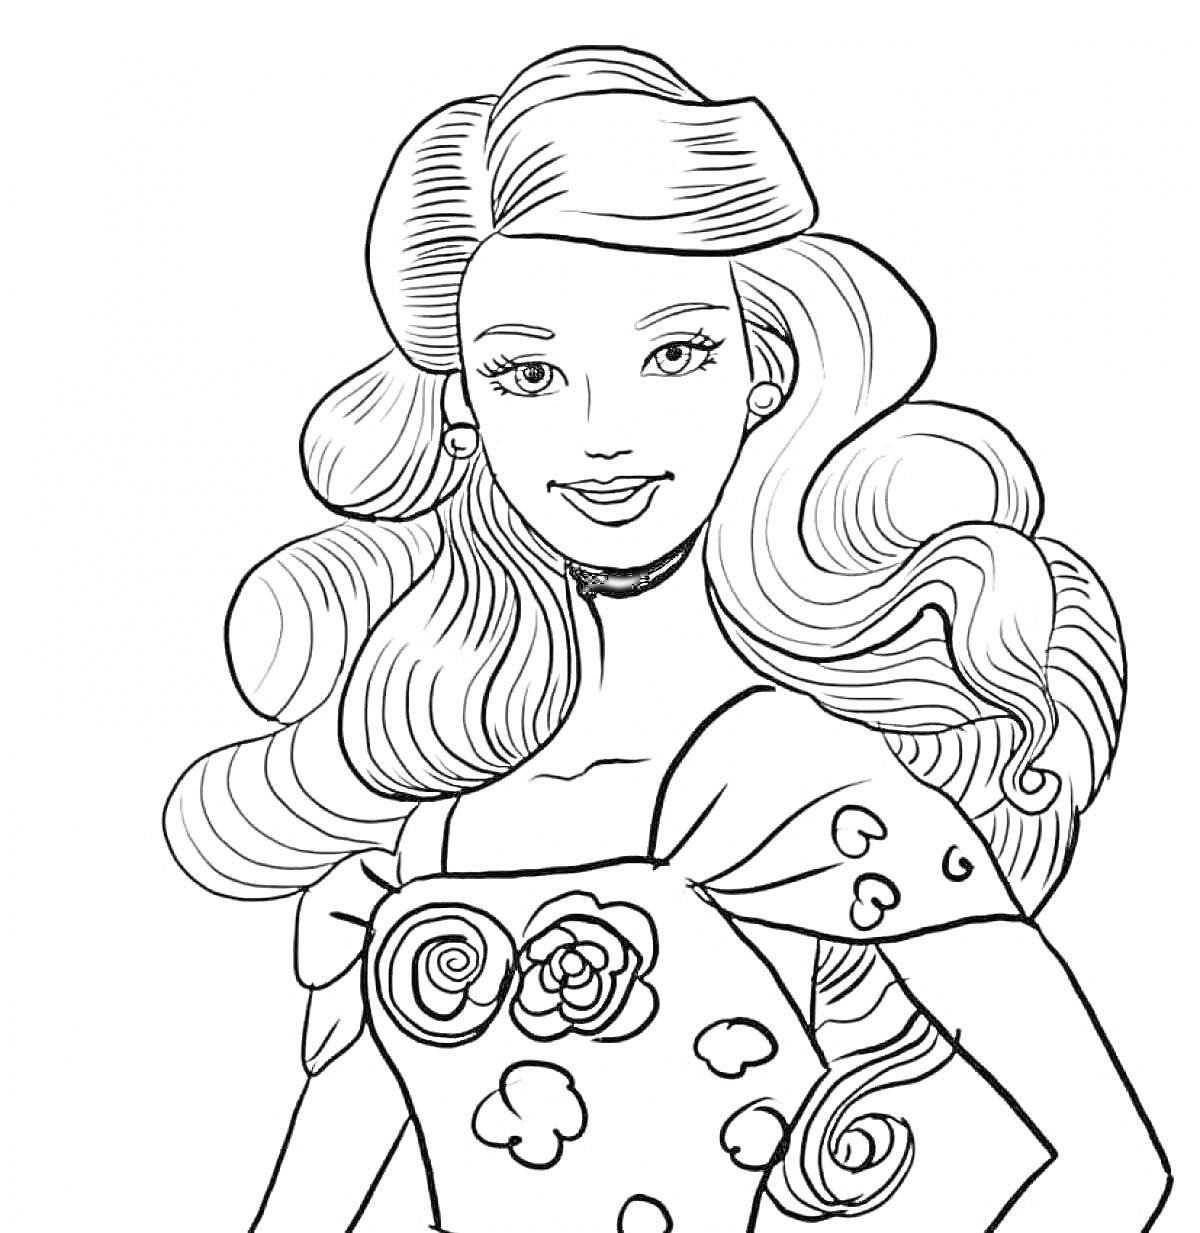 Раскраска Кукла Барби с длинными волнистыми волосами и платьем с цветами и сердечками